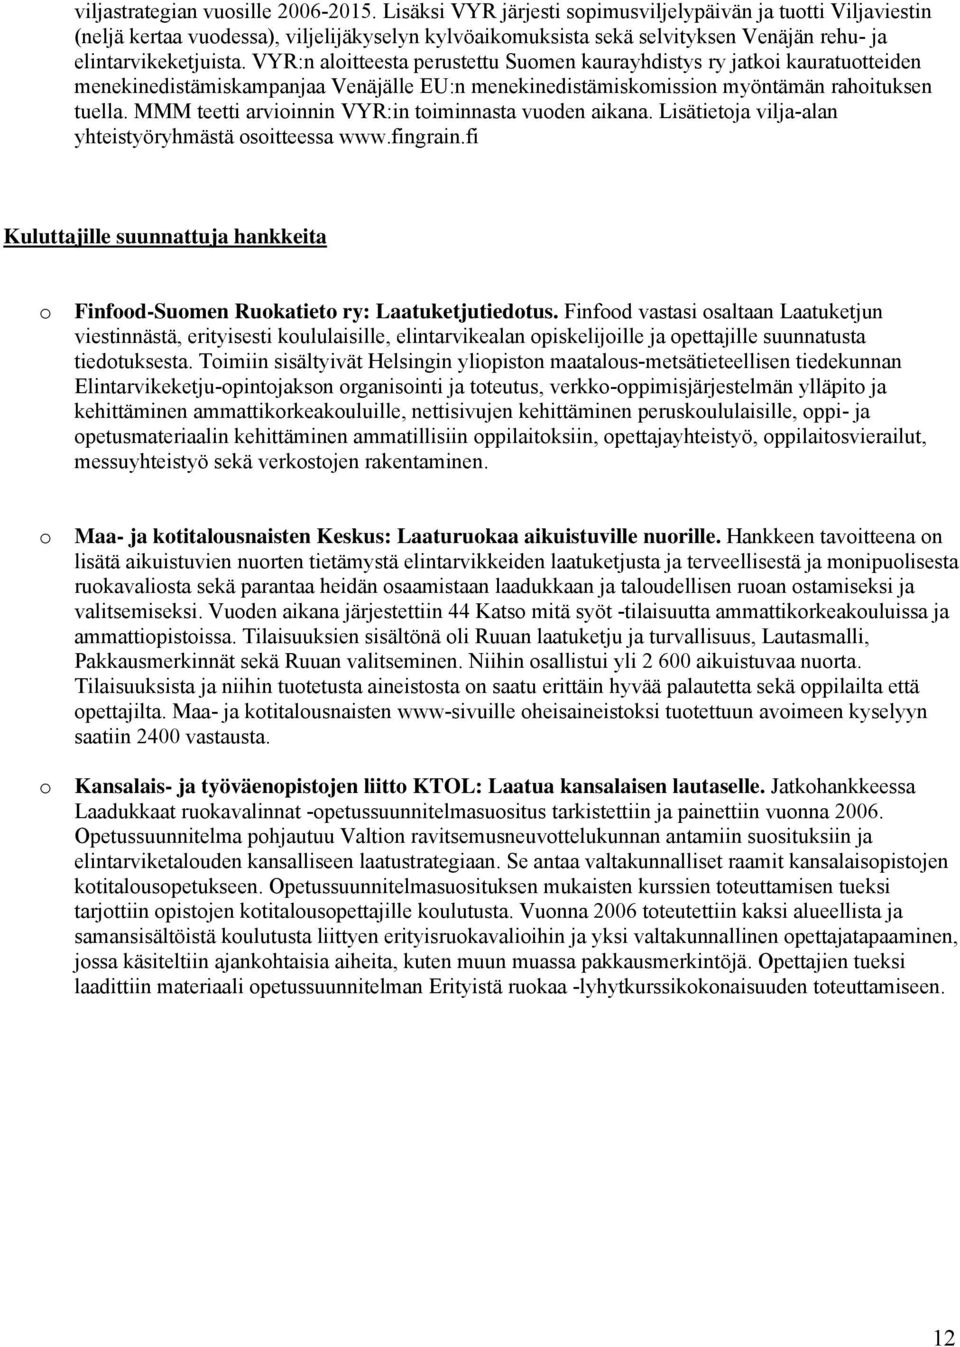 VYR:n alitteesta perustettu Sumen kaurayhdistys ry jatki kauratutteiden menekinedistämiskampanjaa Venäjälle EU:n menekinedistämiskmissin myöntämän rahituksen tuella.